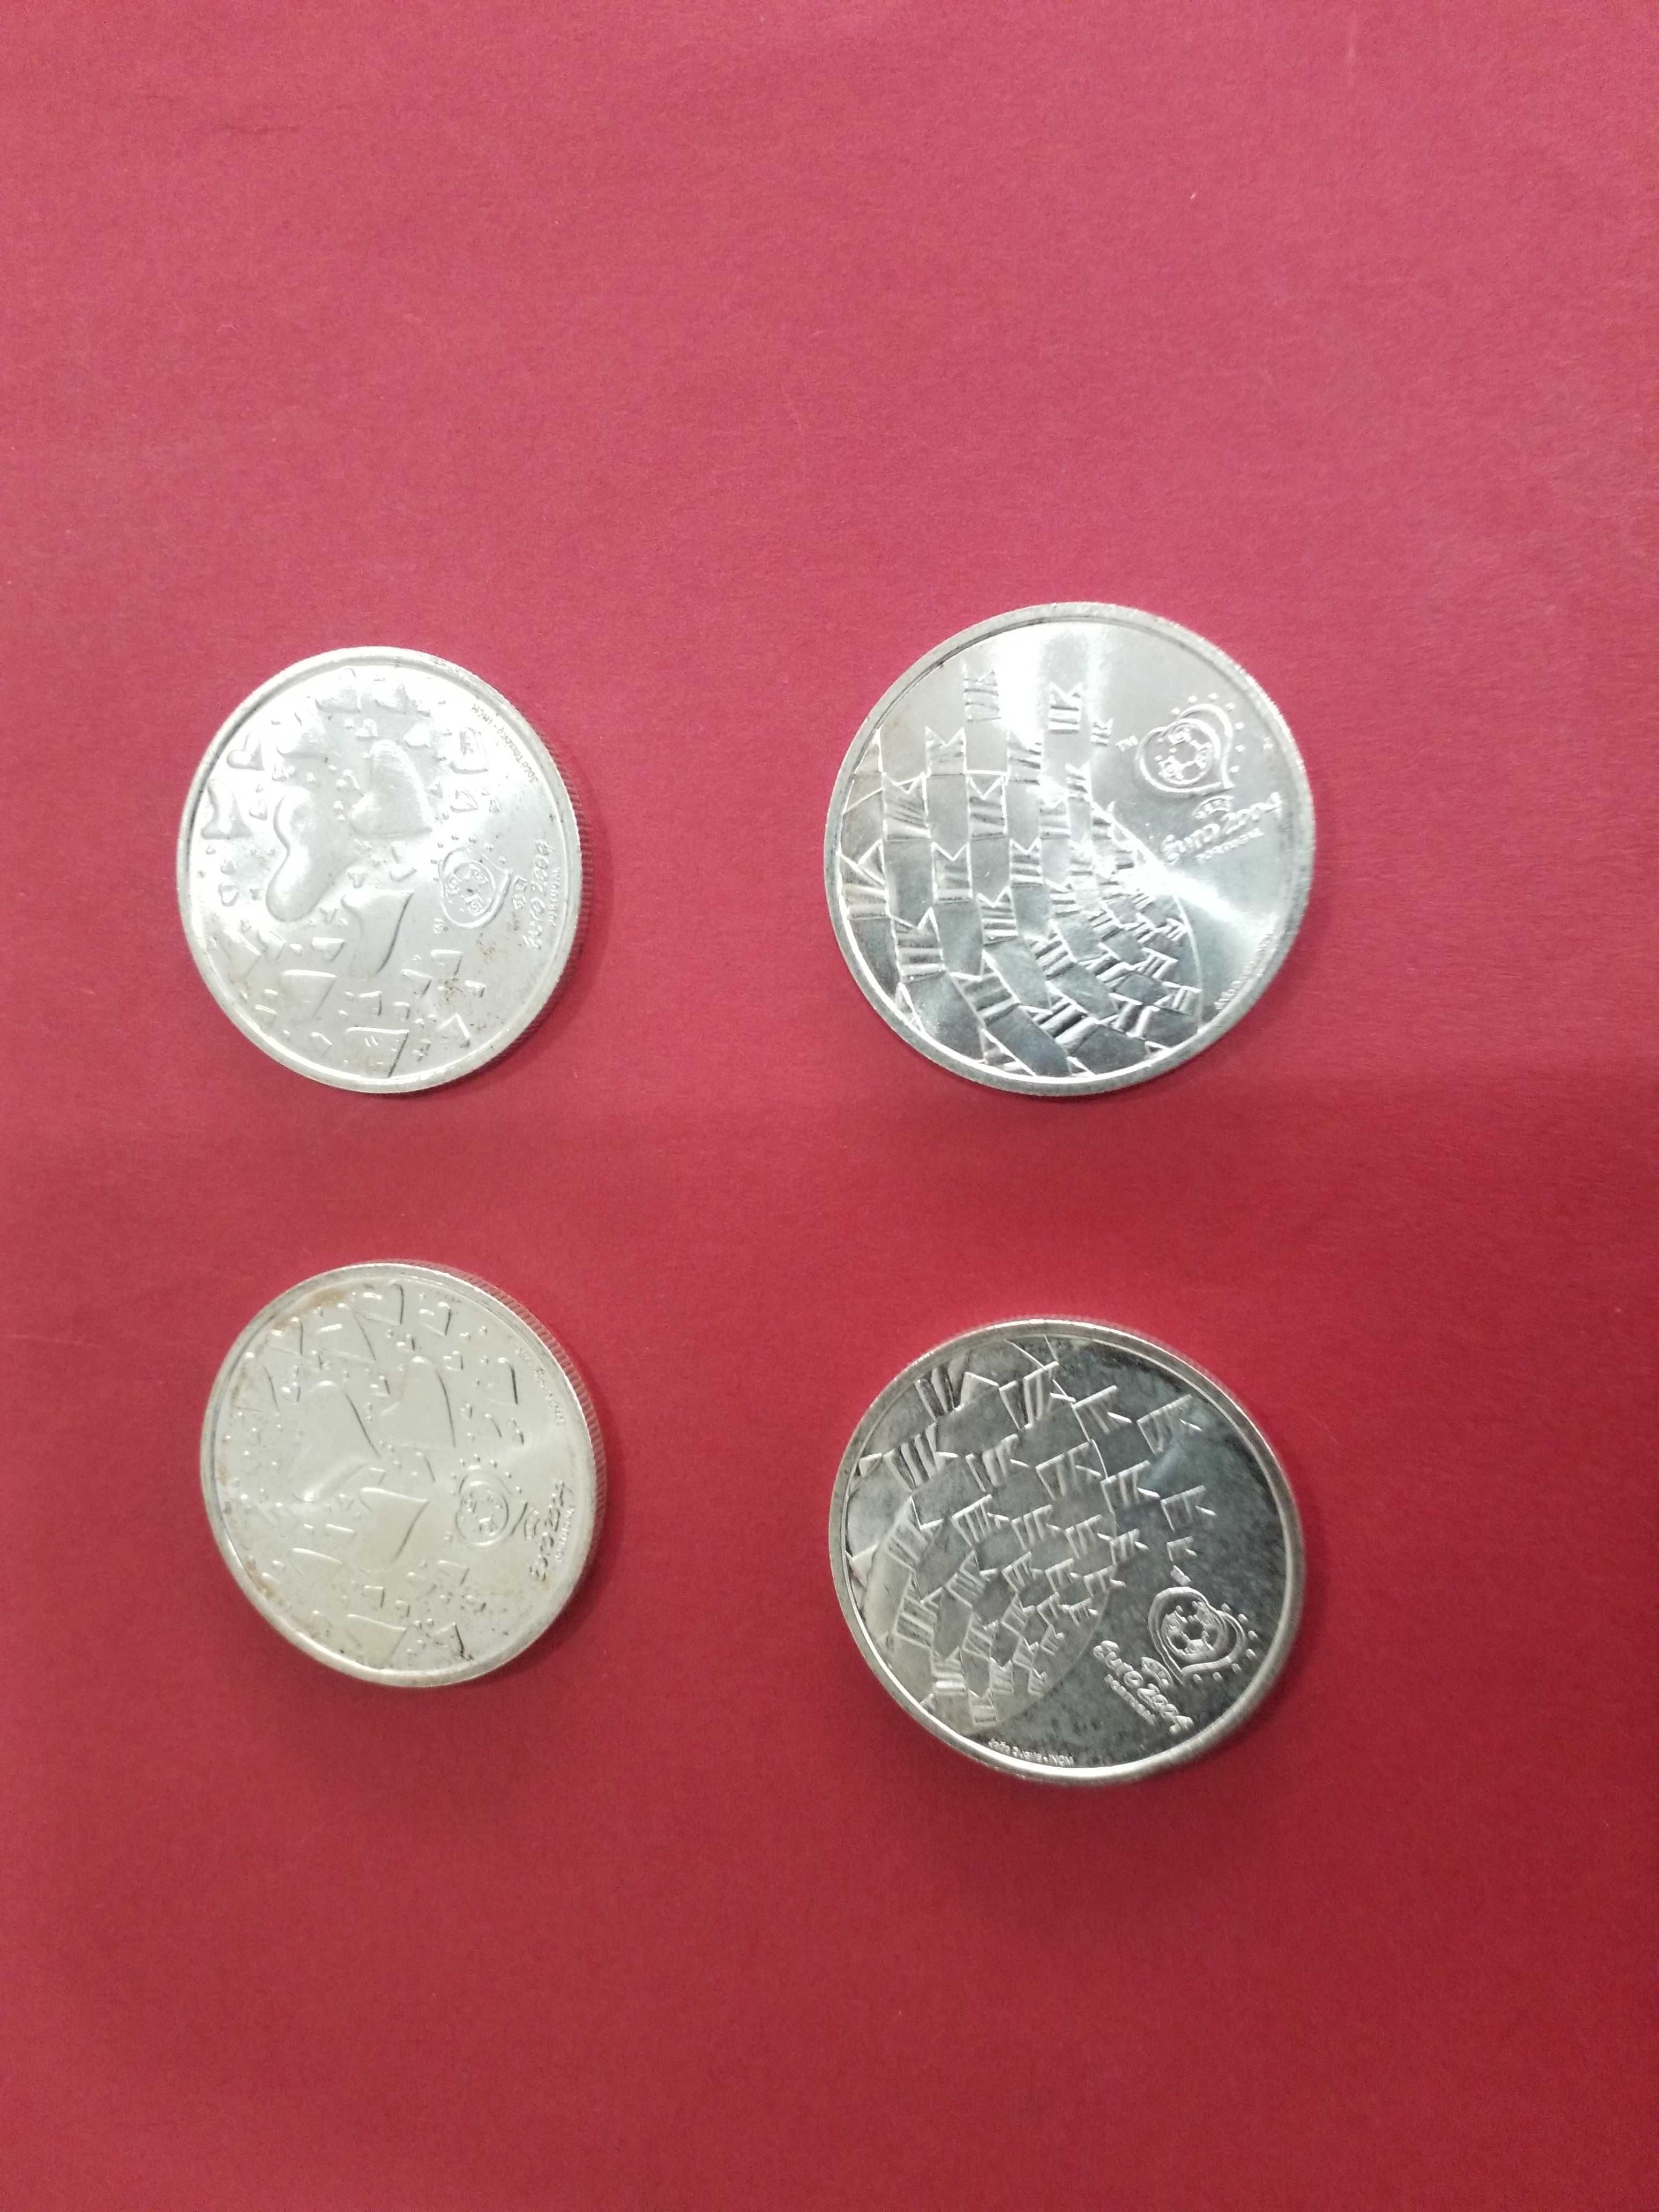 Moedas portuguesas euros em prata